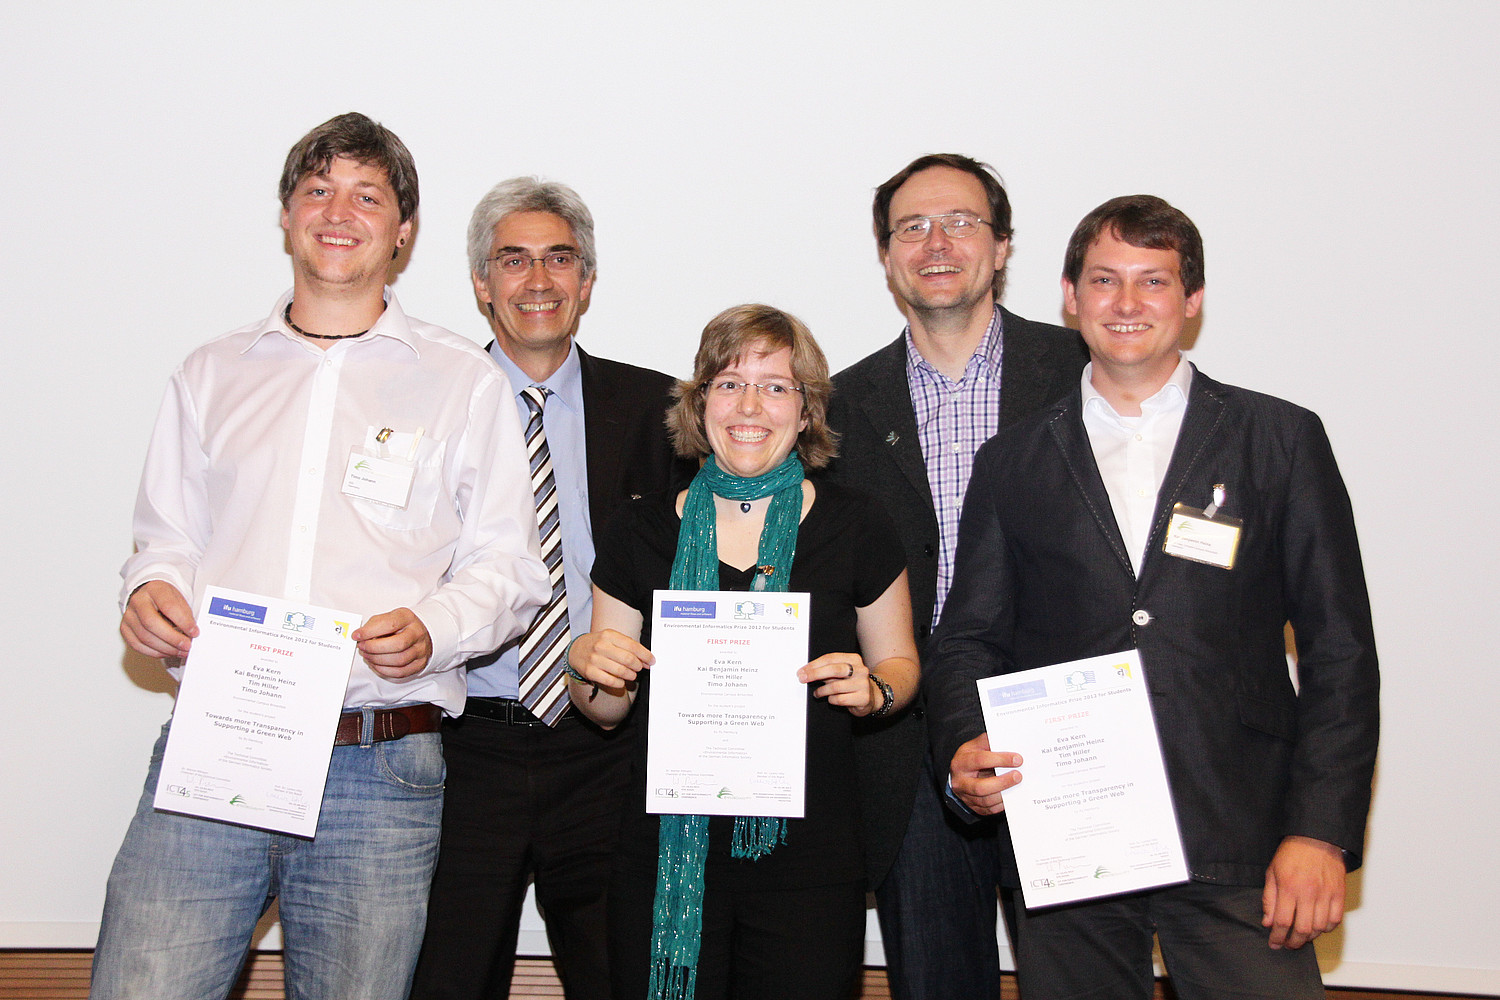 Die Preisübergabe im Rahmen der EnviroInfo 2012 in Dessau.